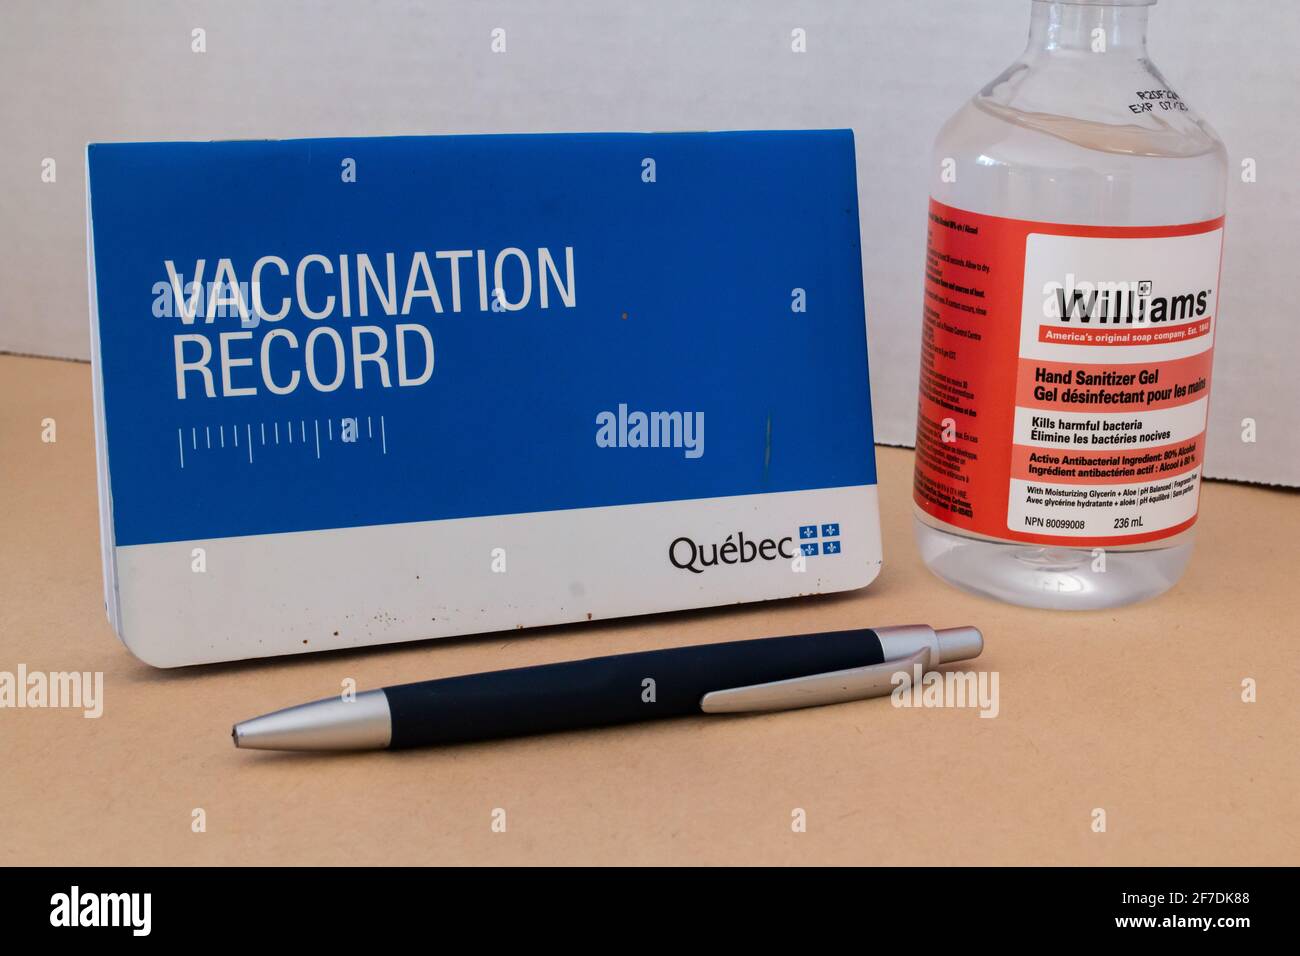 Toronto, Ontario, Canada - 2 février 2021 : un livret de vaccination du Québec à côté d'une bouteille de désinfectant pour les mains et d'un stylo. Banque D'Images